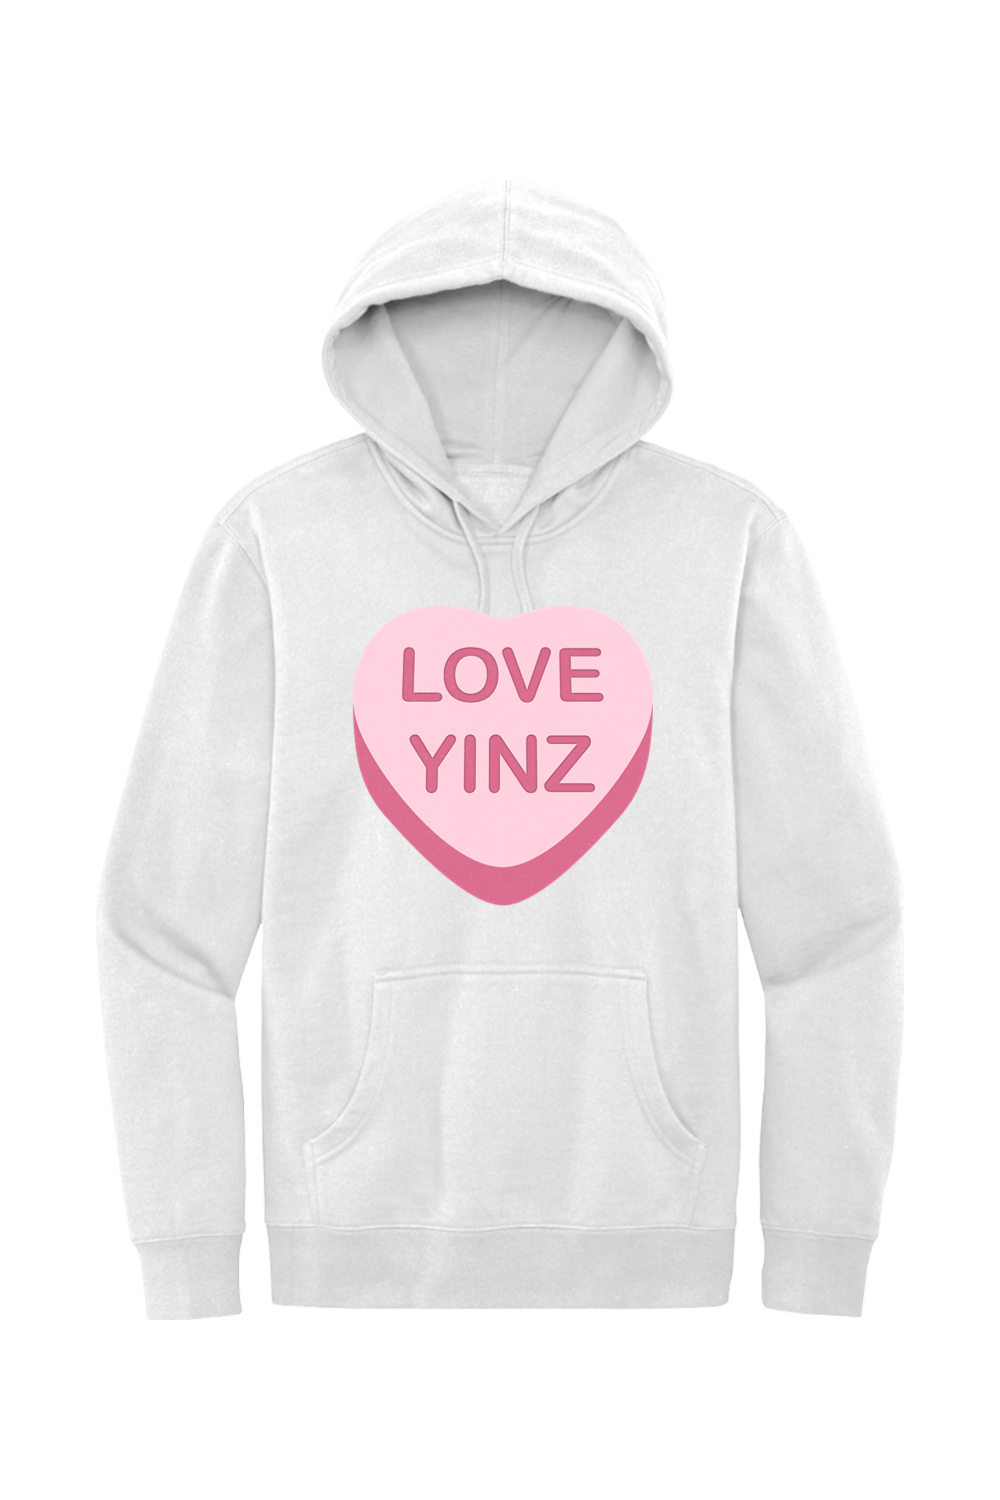 Love Yinz - Fleece Hoodie - Yinzylvania